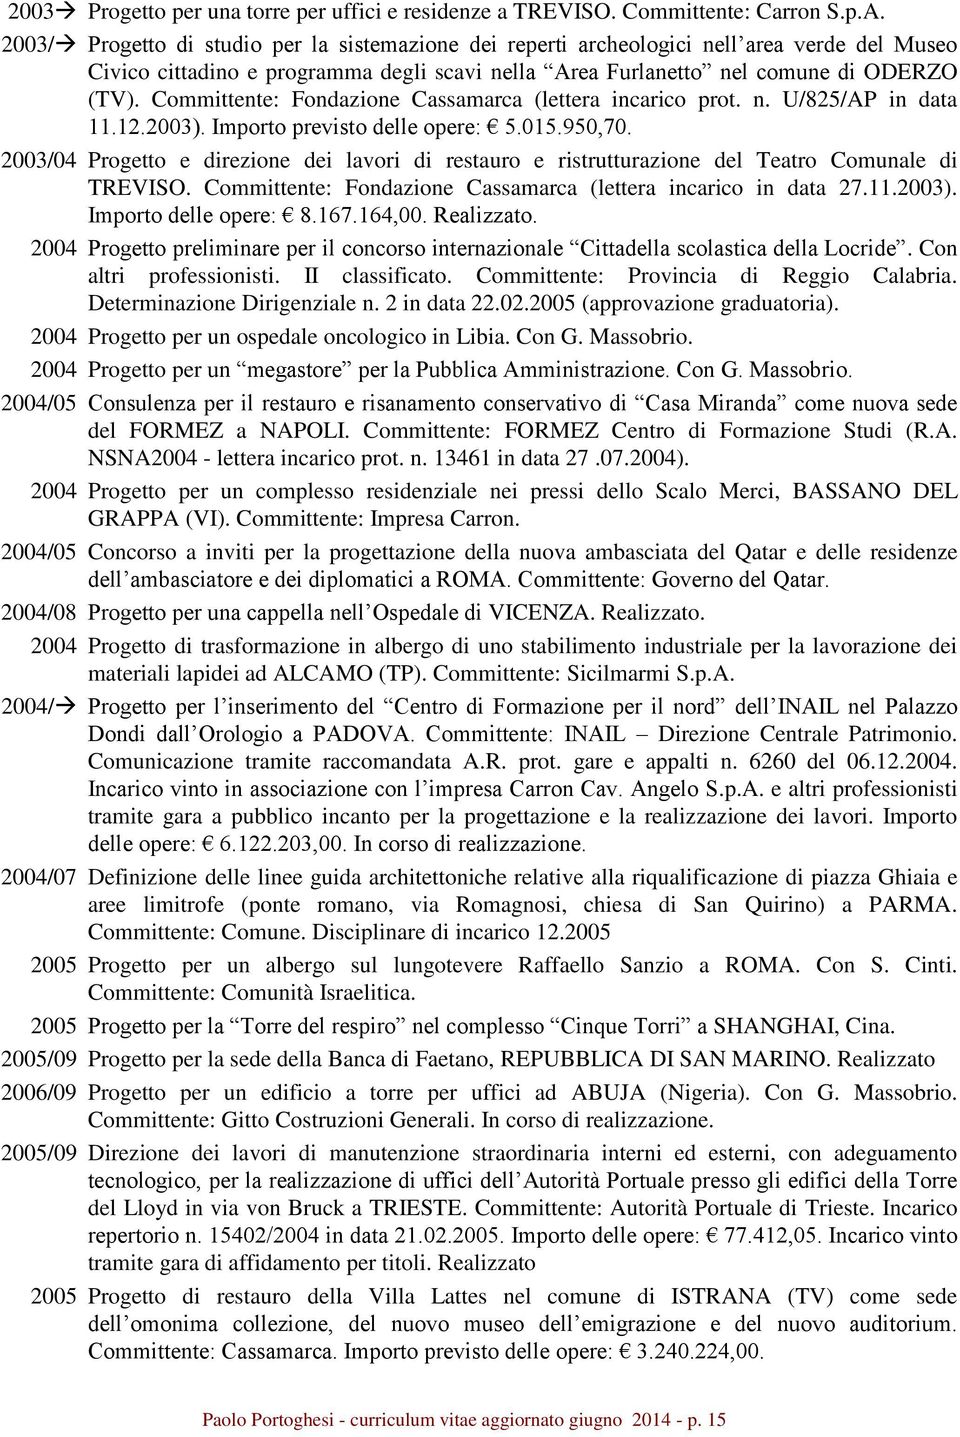 Committente: Fondazione Cassamarca (lettera incarico prot. n. U/825/AP in data 11.12.2003). Importo previsto delle opere: 5.015.950,70.